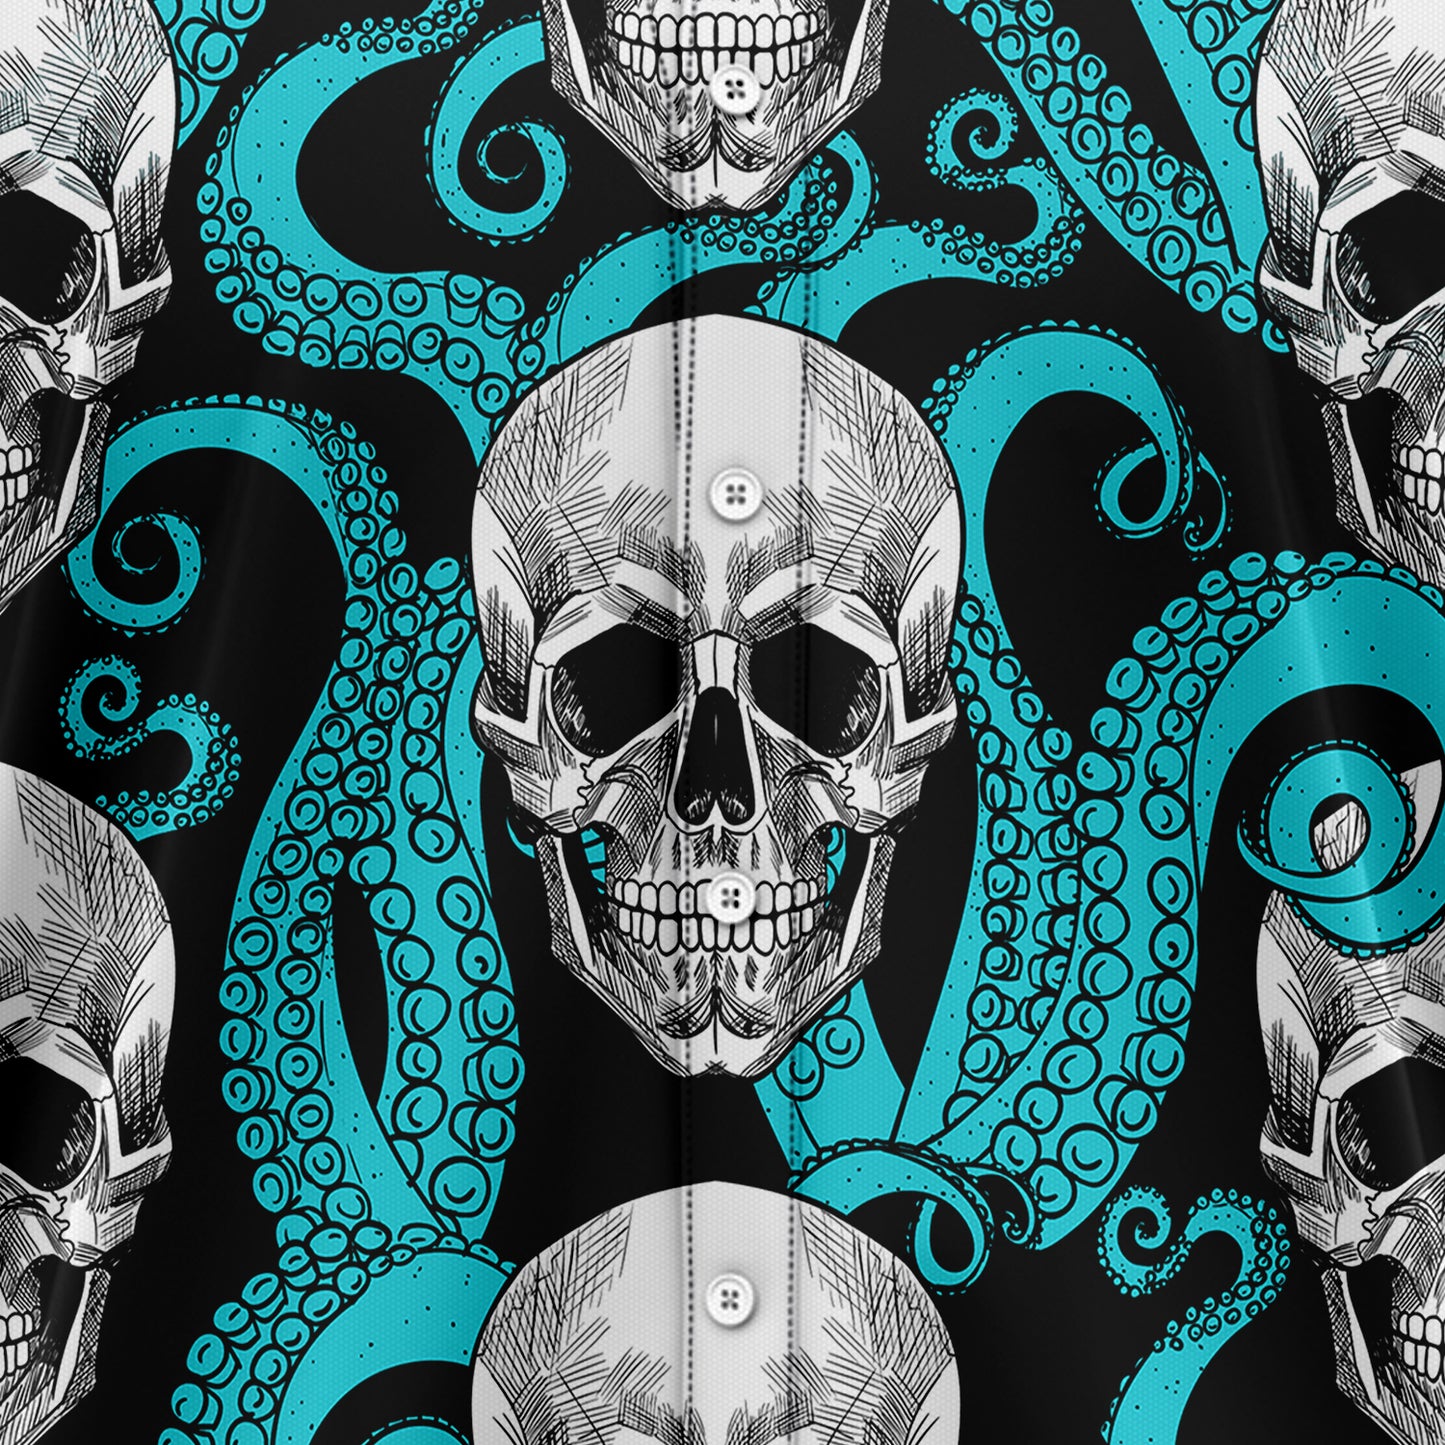 Skull Octopus T1007 Hawaiian Shirt